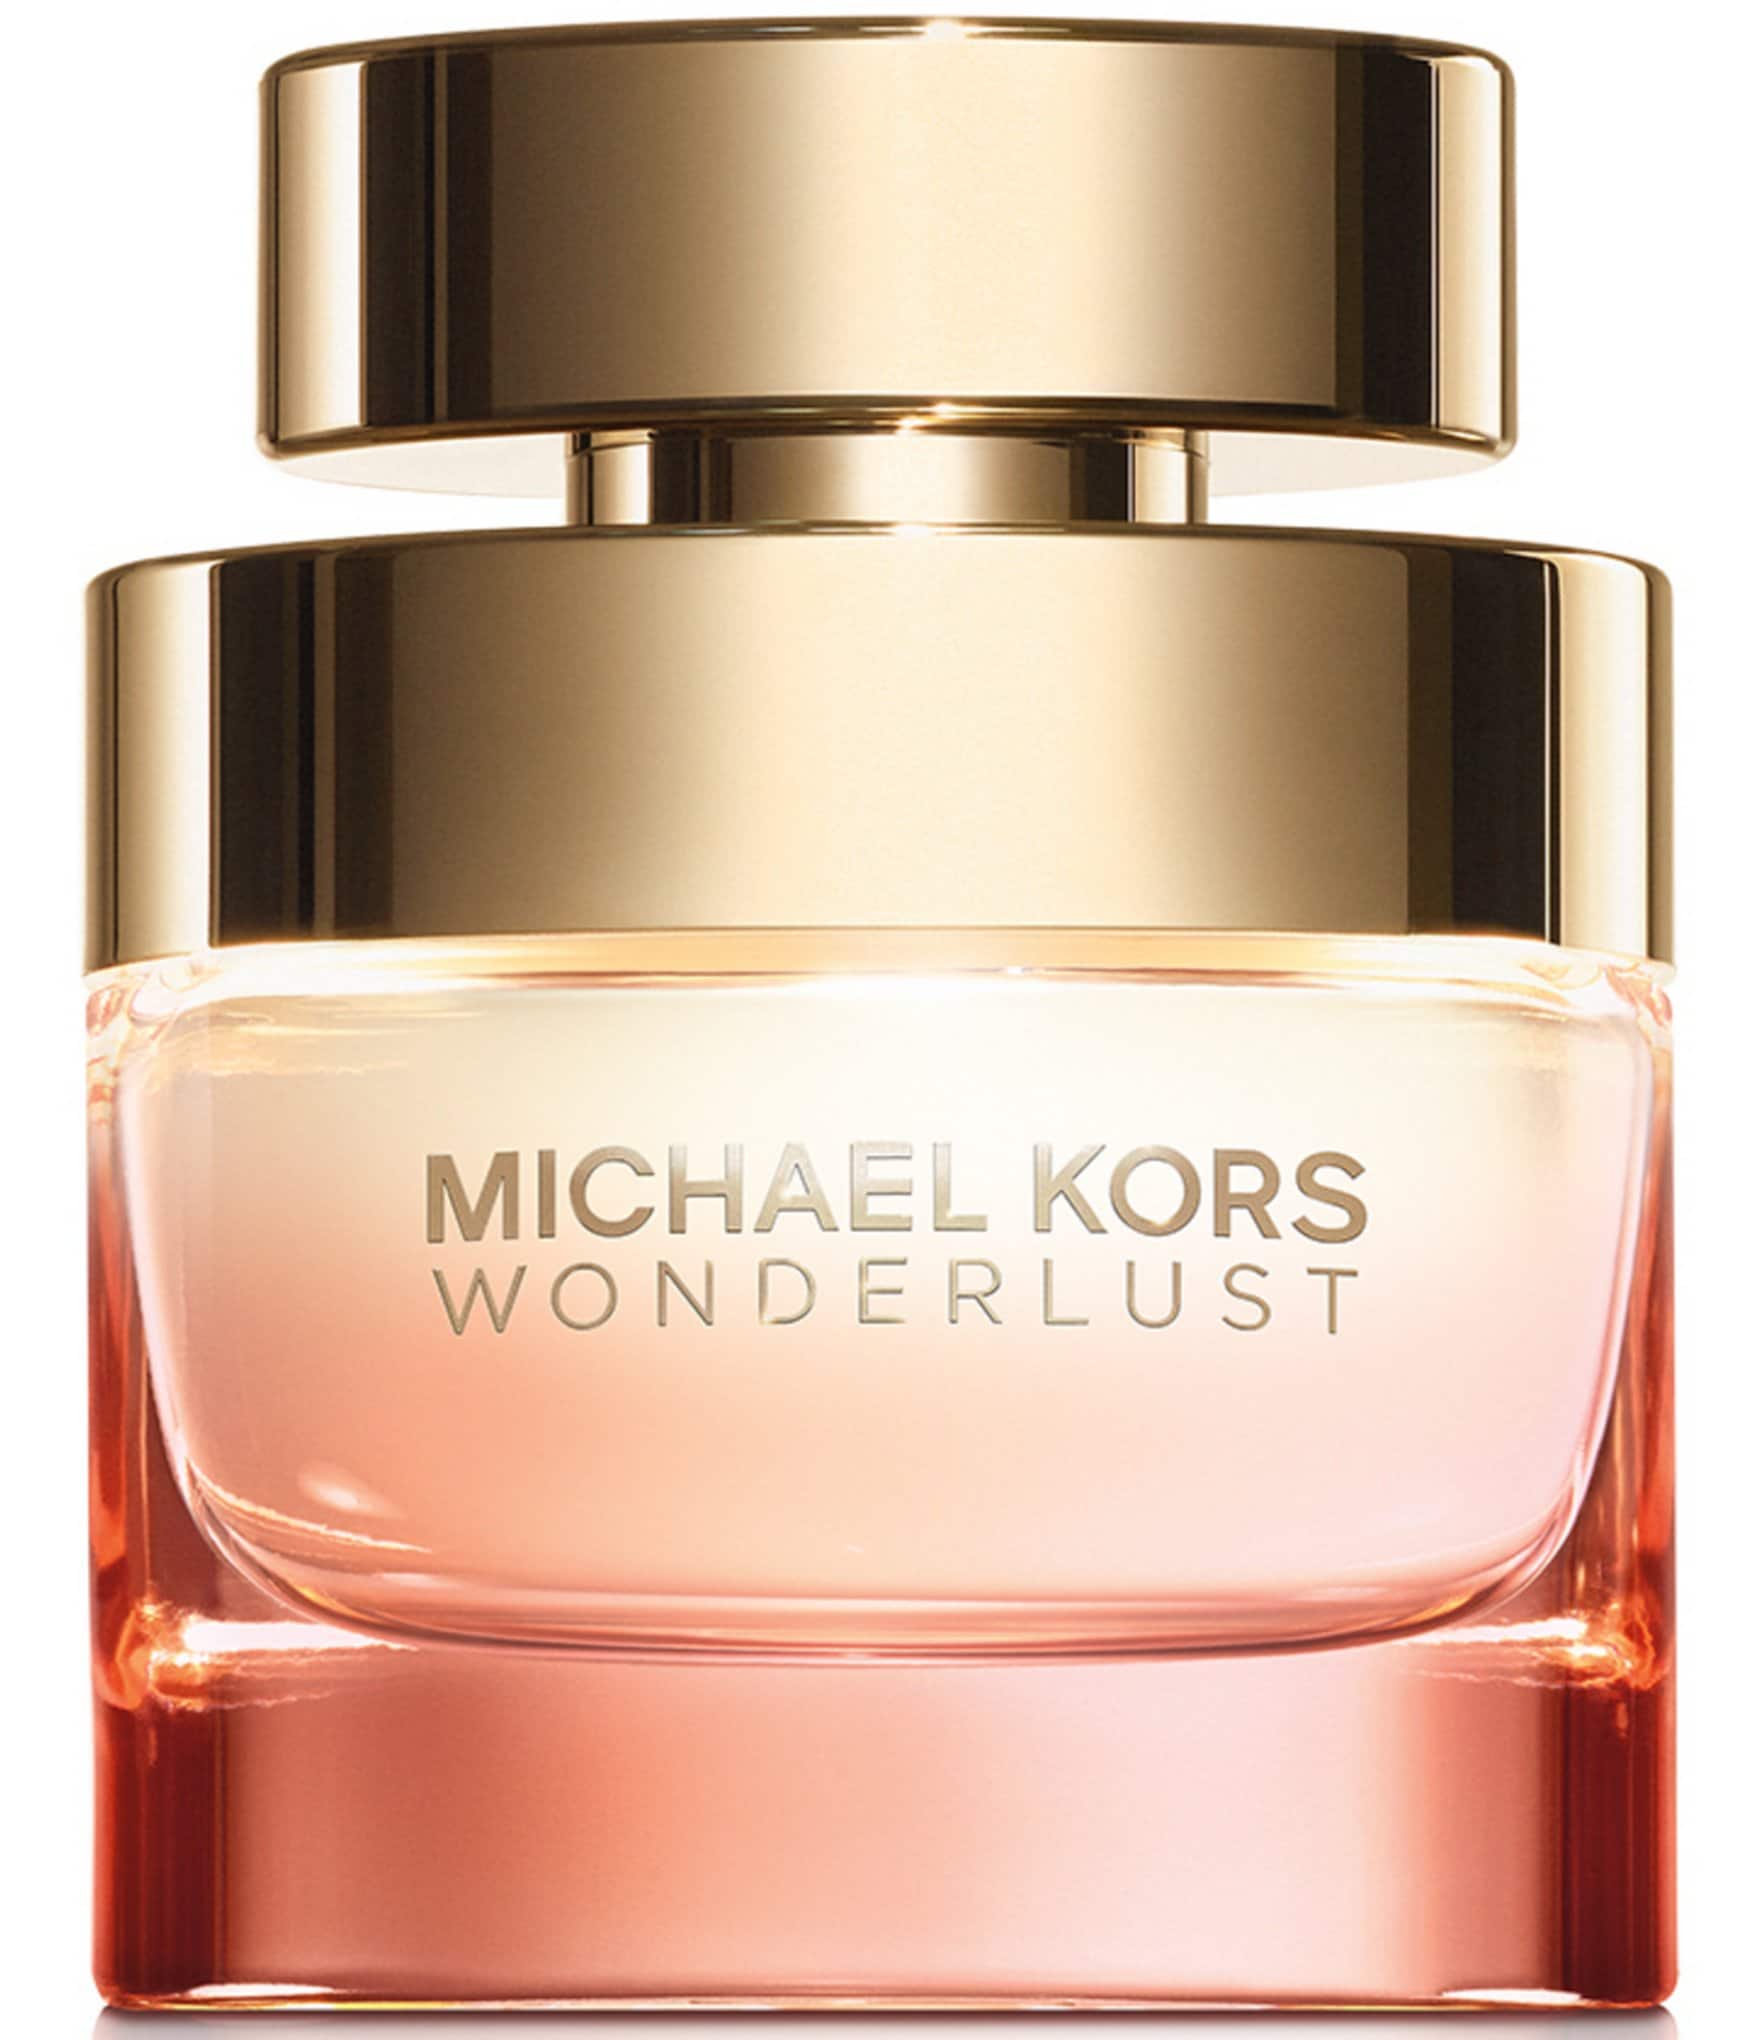 michael kors cologne: Fragrance, Perfume, & Cologne for Women & Men |  Dillard's